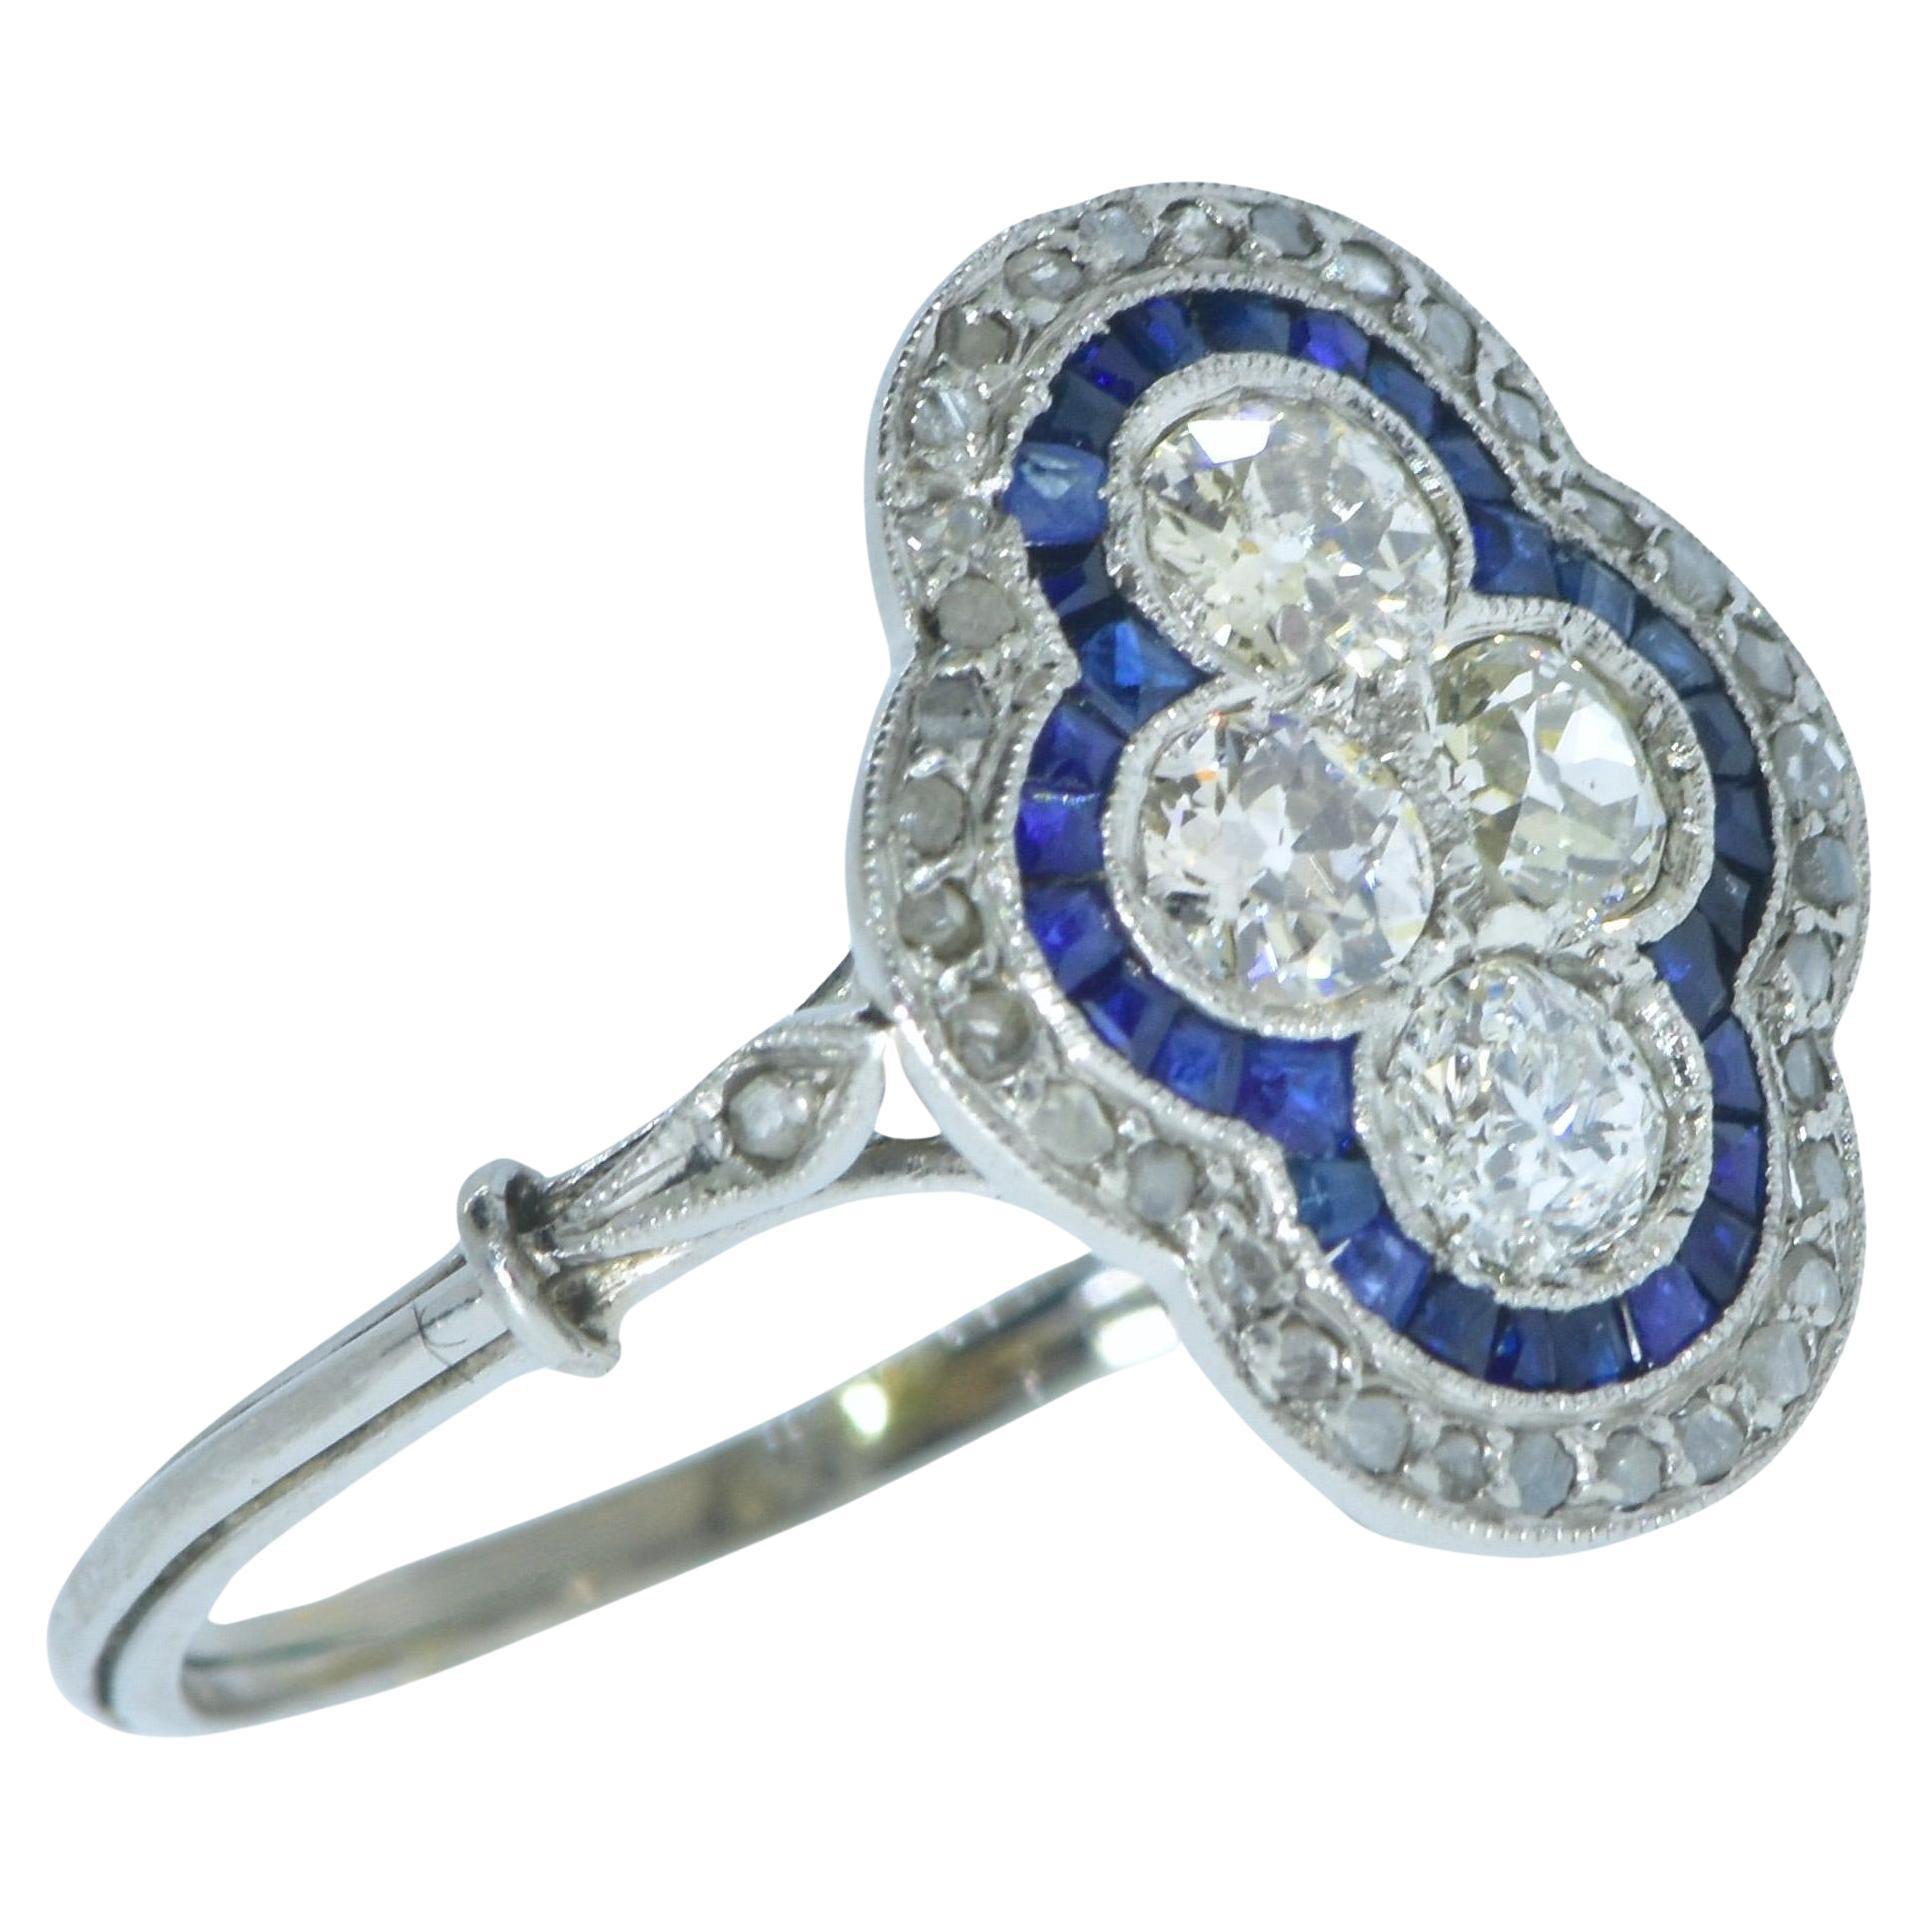 Bague ancienne édouardienne en platine ornée de diamants et de saphirs bleus vifs de taille fantaisie, à motif quadrilobé, vers 1915. Les quatre diamants centraux sont entourés de saphirs bleus vifs naturels taillés en calibre, qui sont ensuite